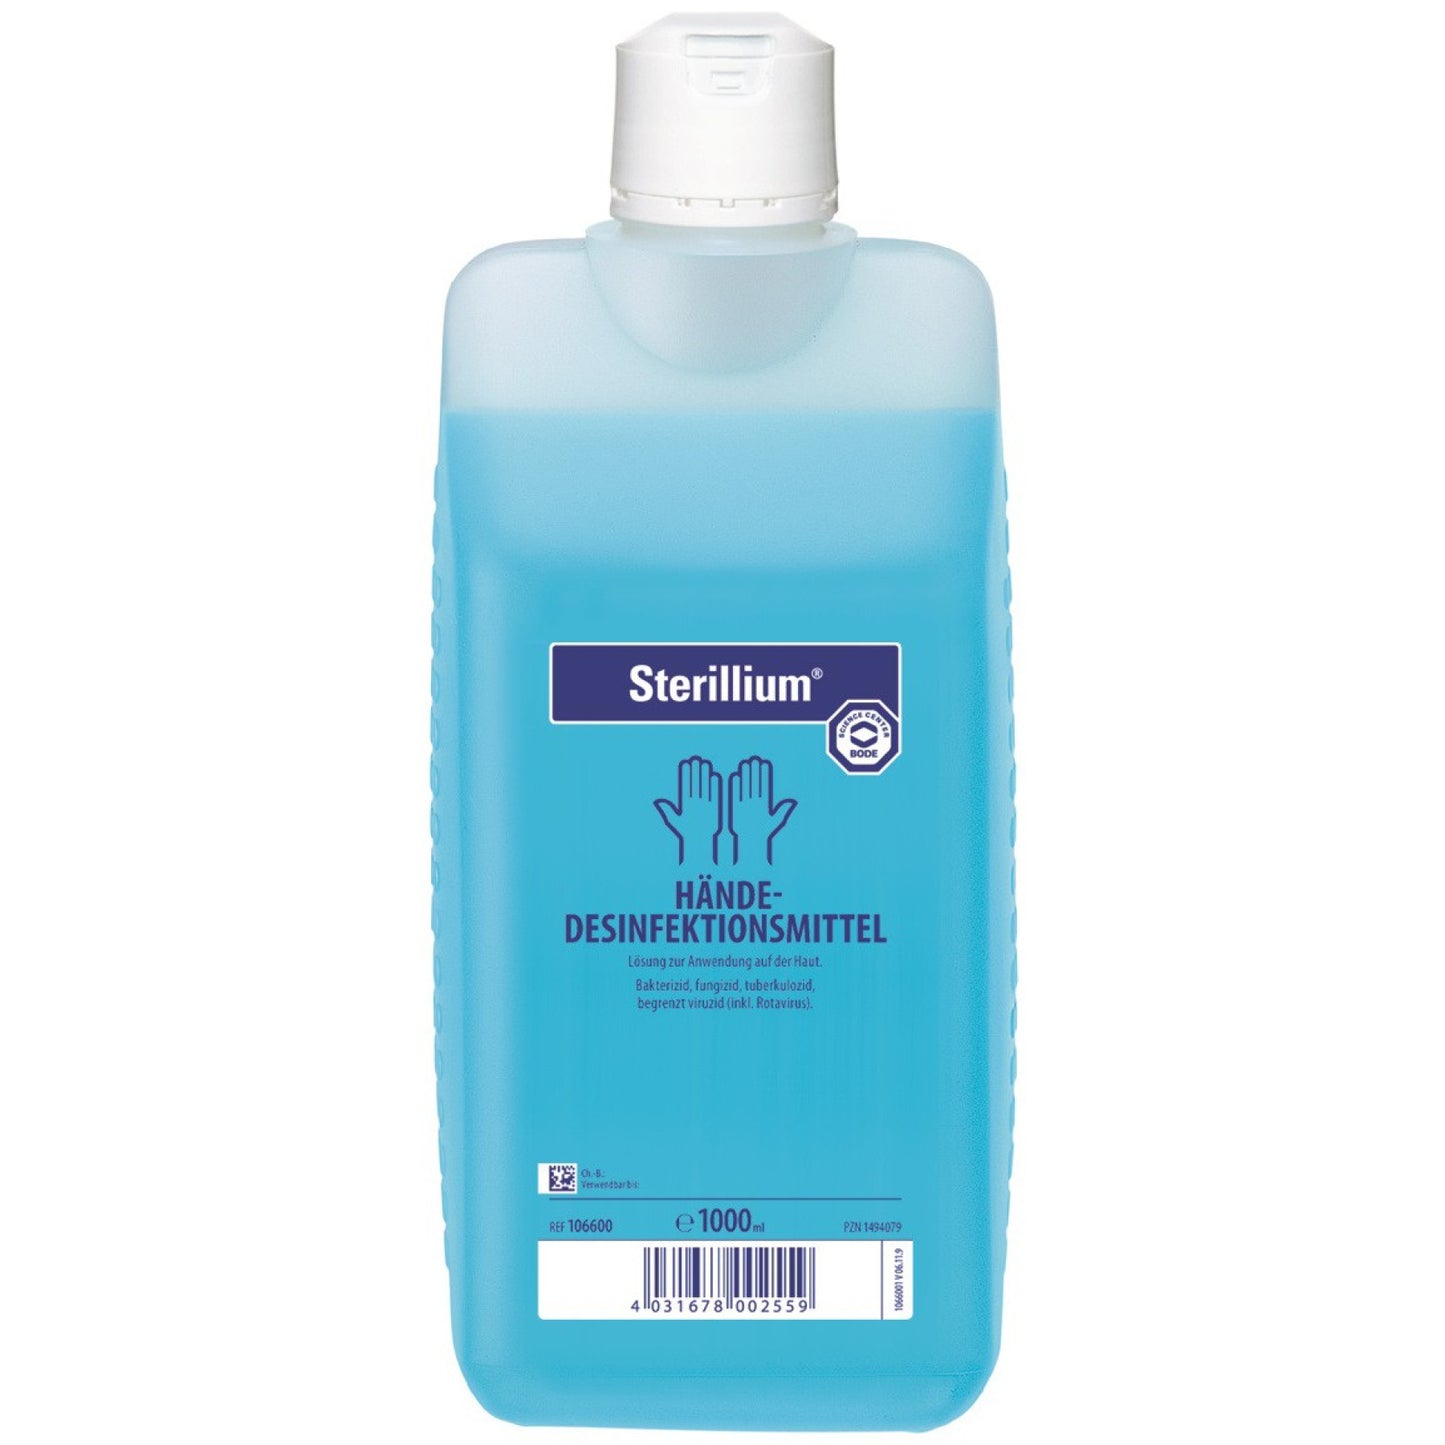 Sterillium classic pure Handdesinfektion, die farbstoff- und parfümfreie Variante von Sterillium